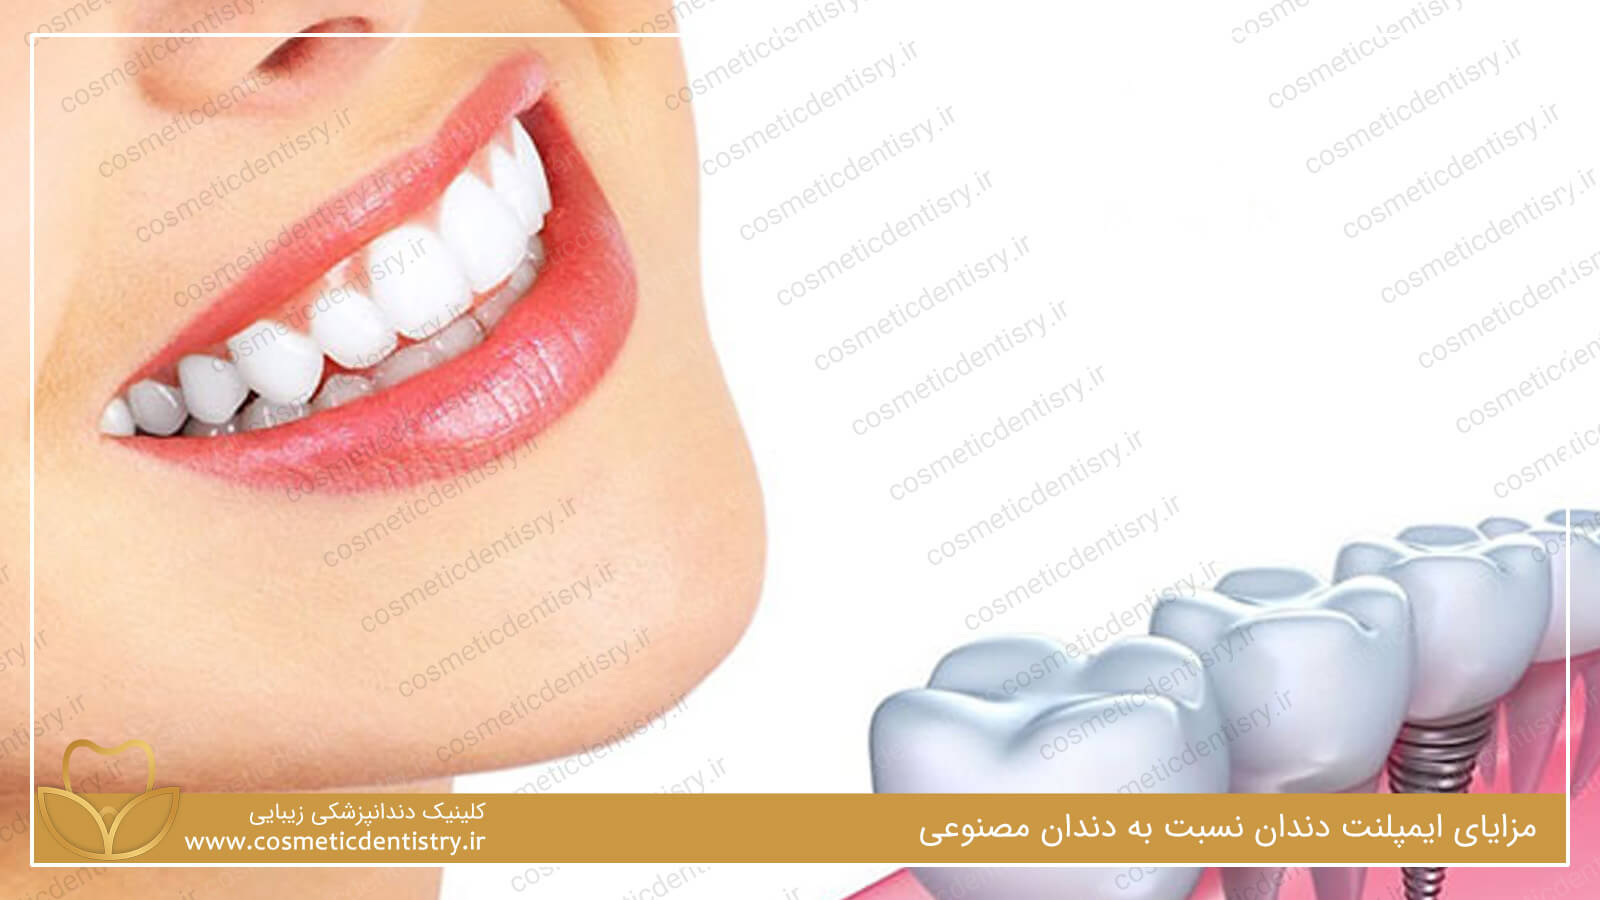 مزایای ایمپلنت دندان نسبت به دندان مصنوعی